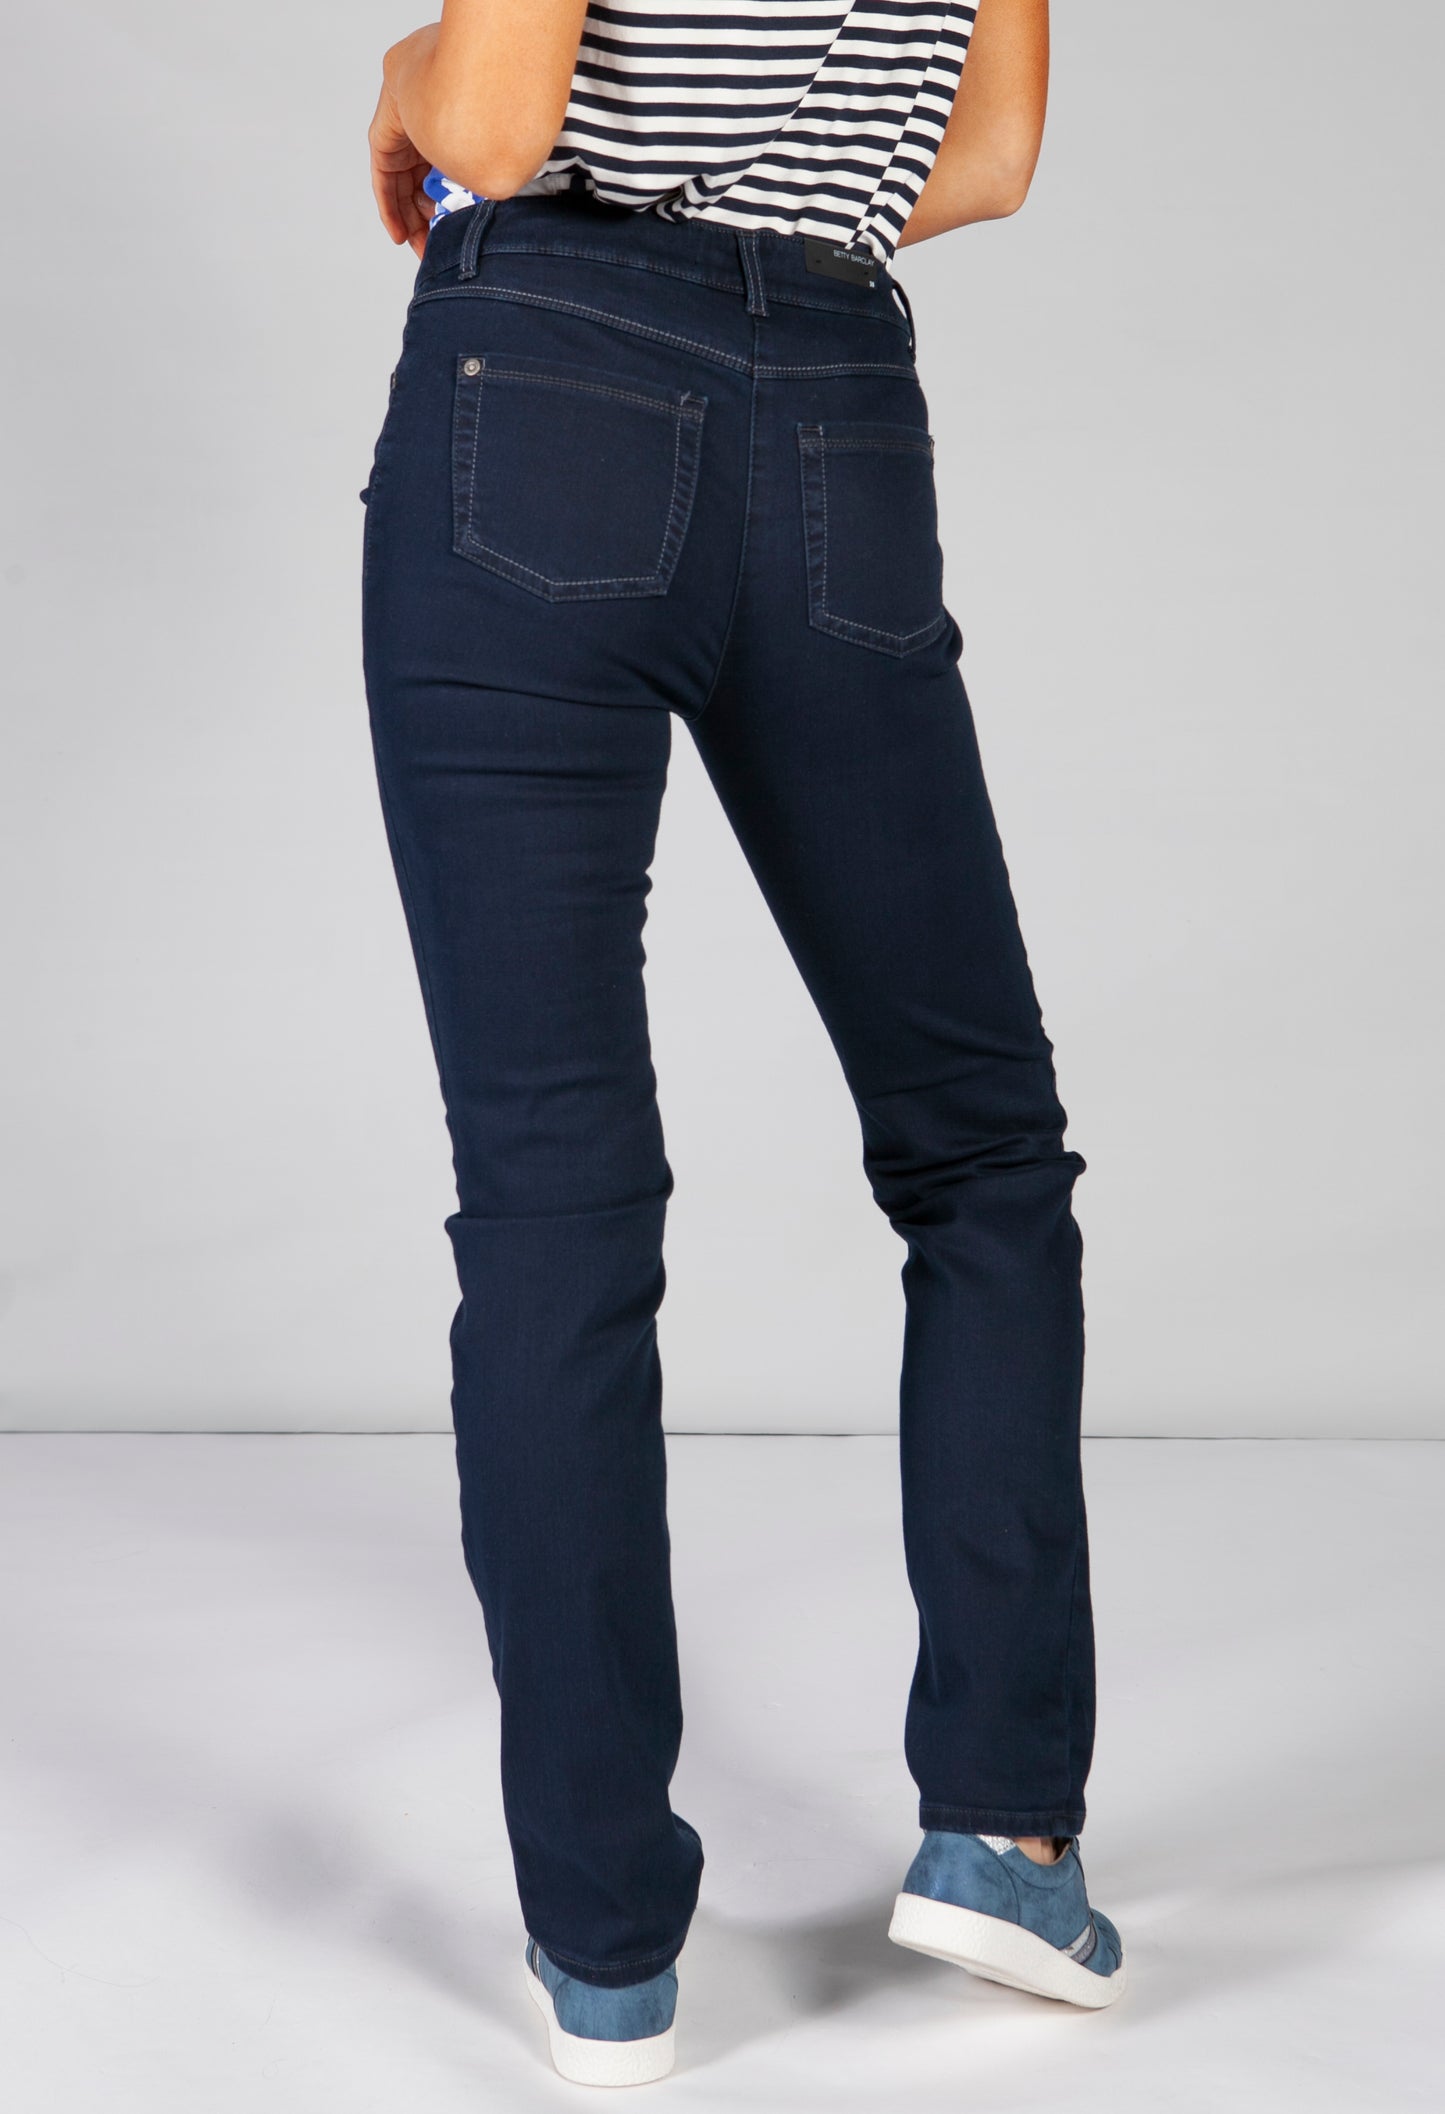 basic jeans in dark blue